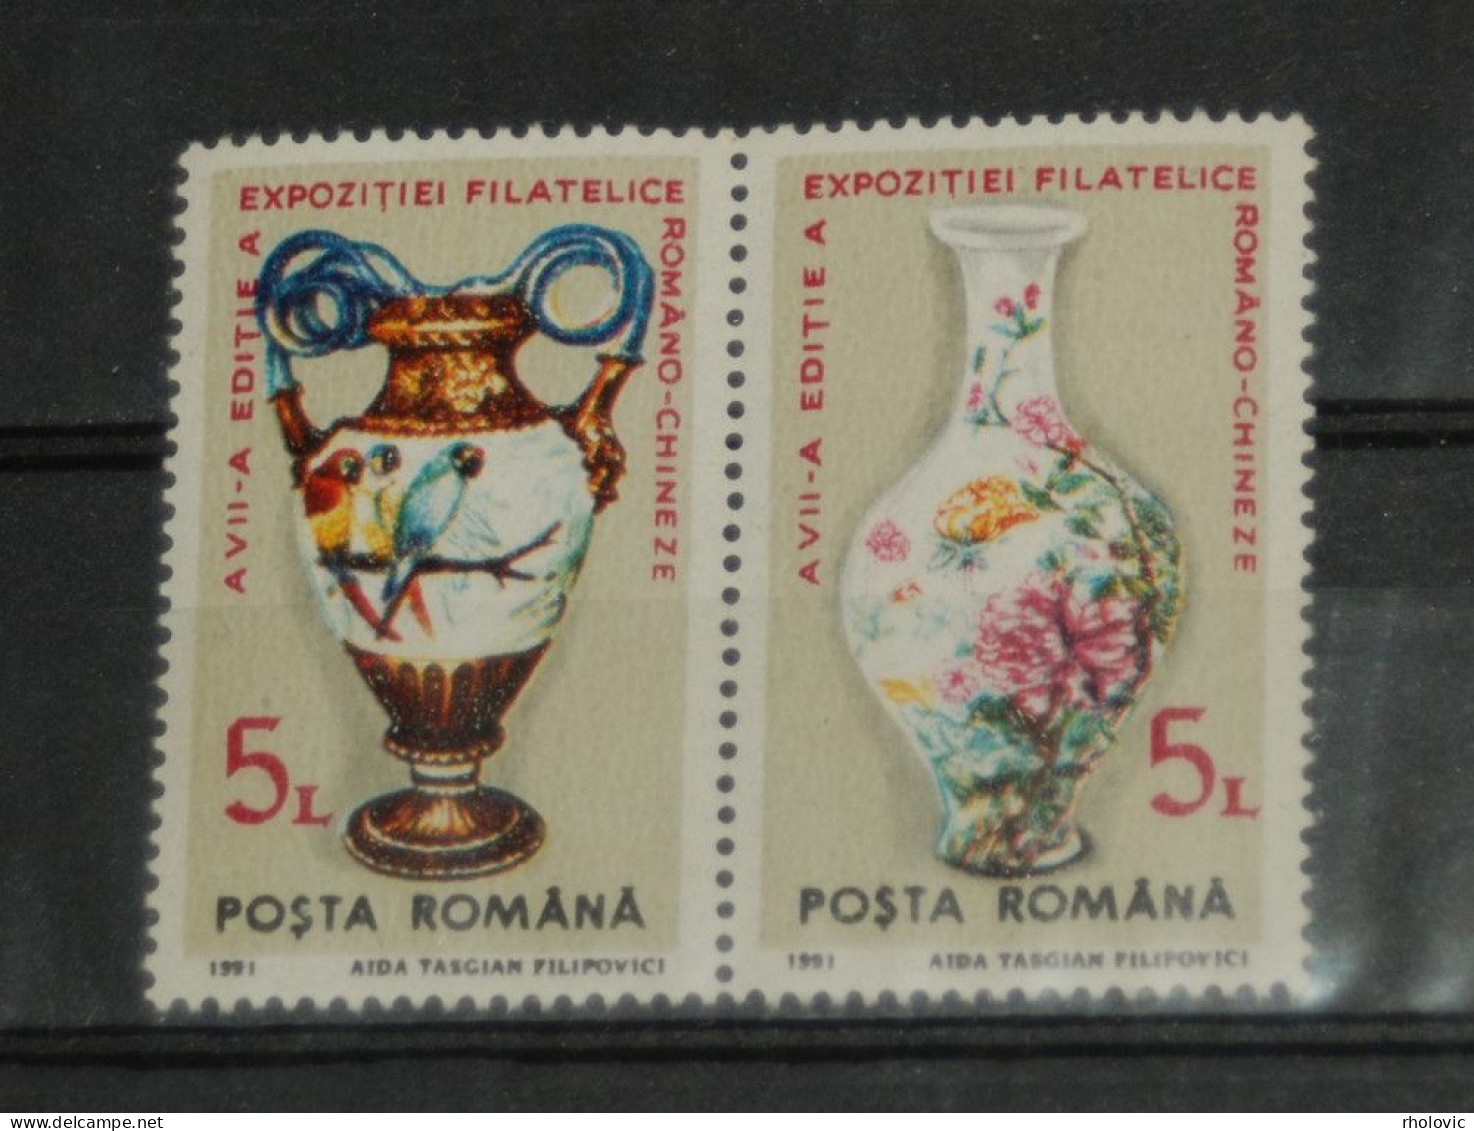 ROMANIA 1991, Art, Porcelain, Vase, Stamp Exhibition, Mi #4672-3, MNH** - Porzellan